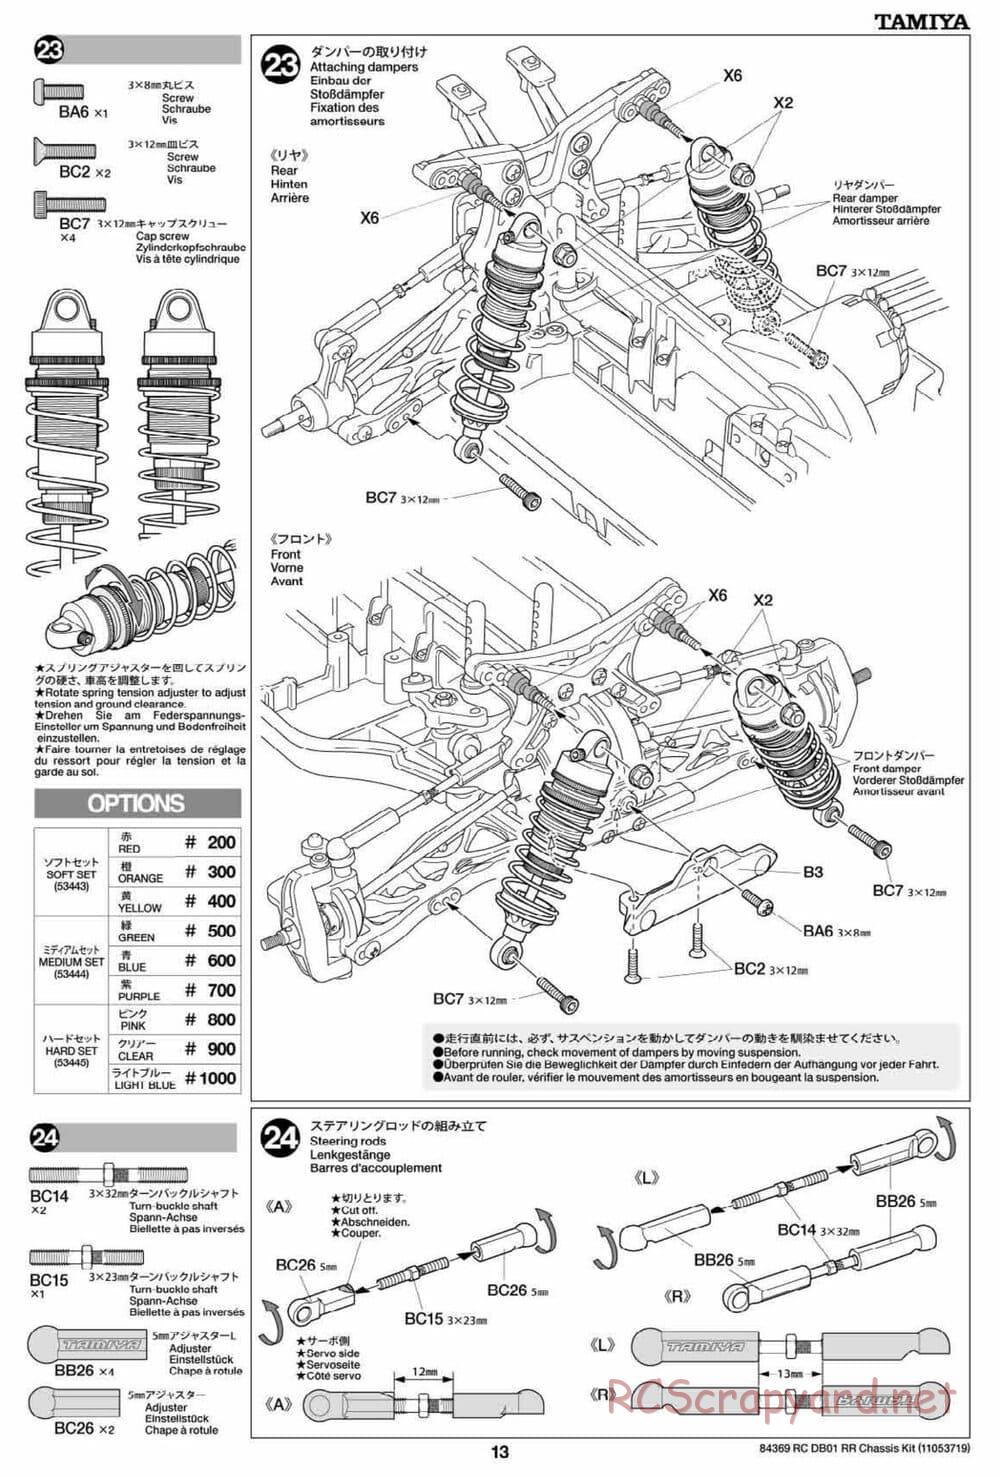 Tamiya - DB-01 RR Chassis - Manual - Page 13